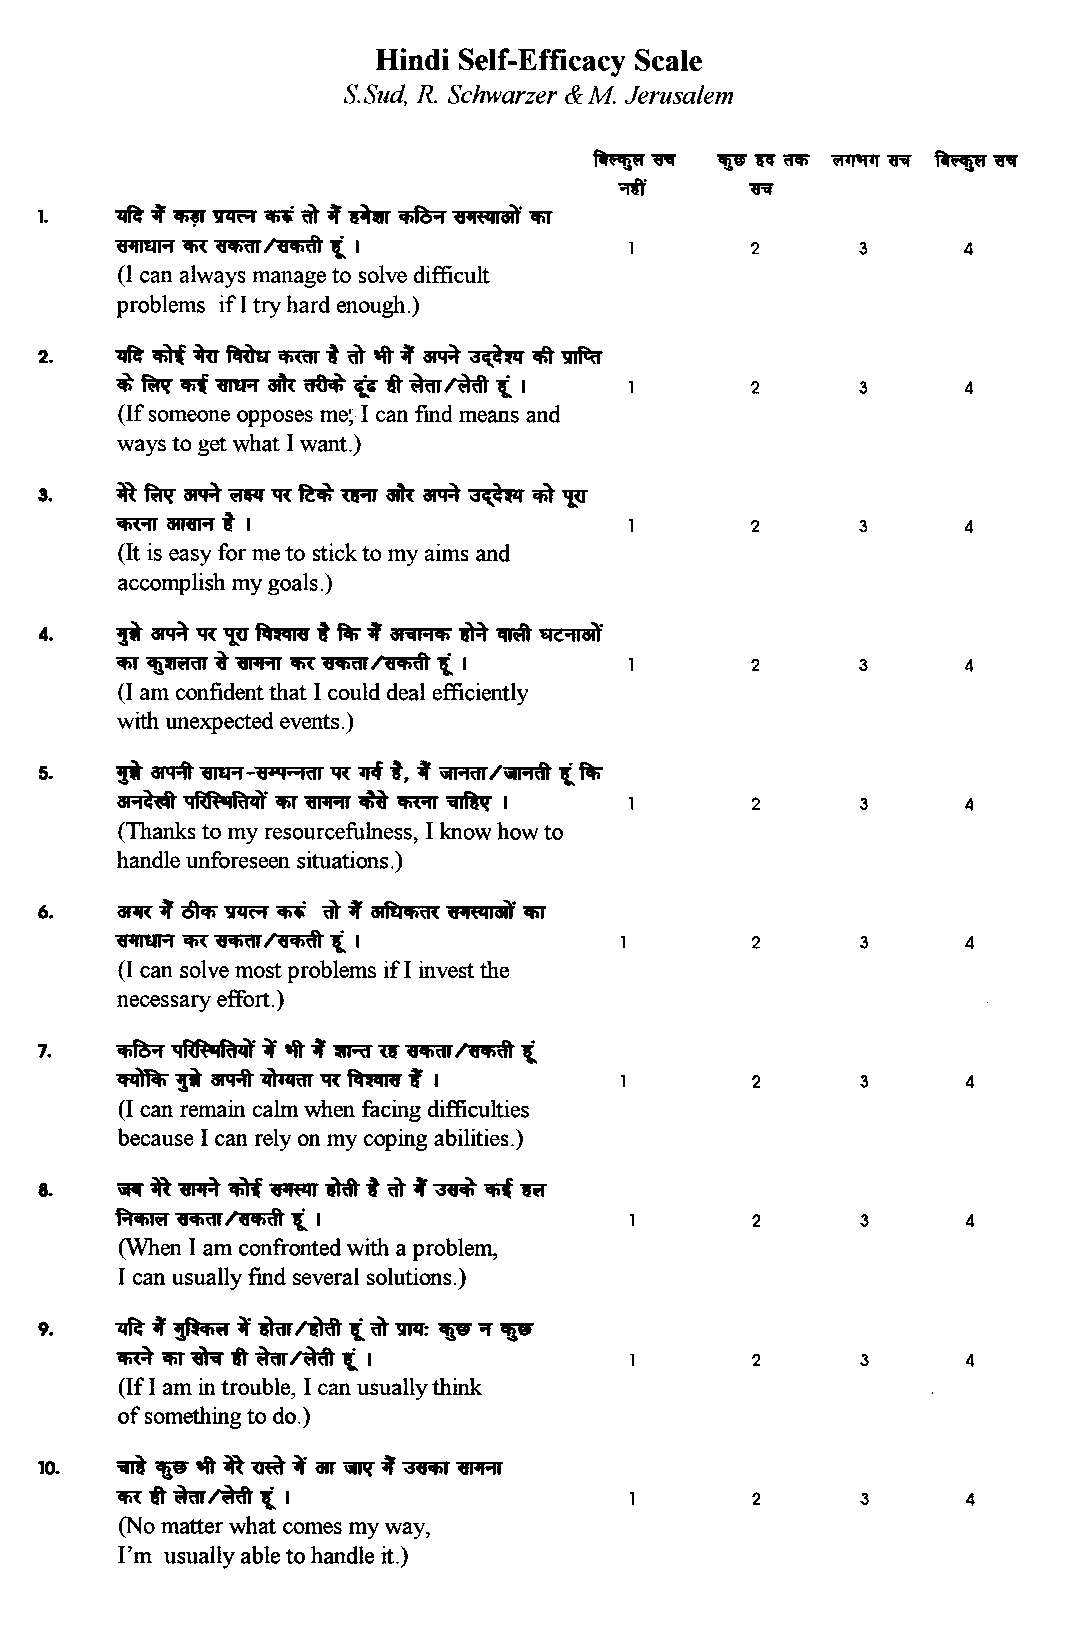 Hindi version